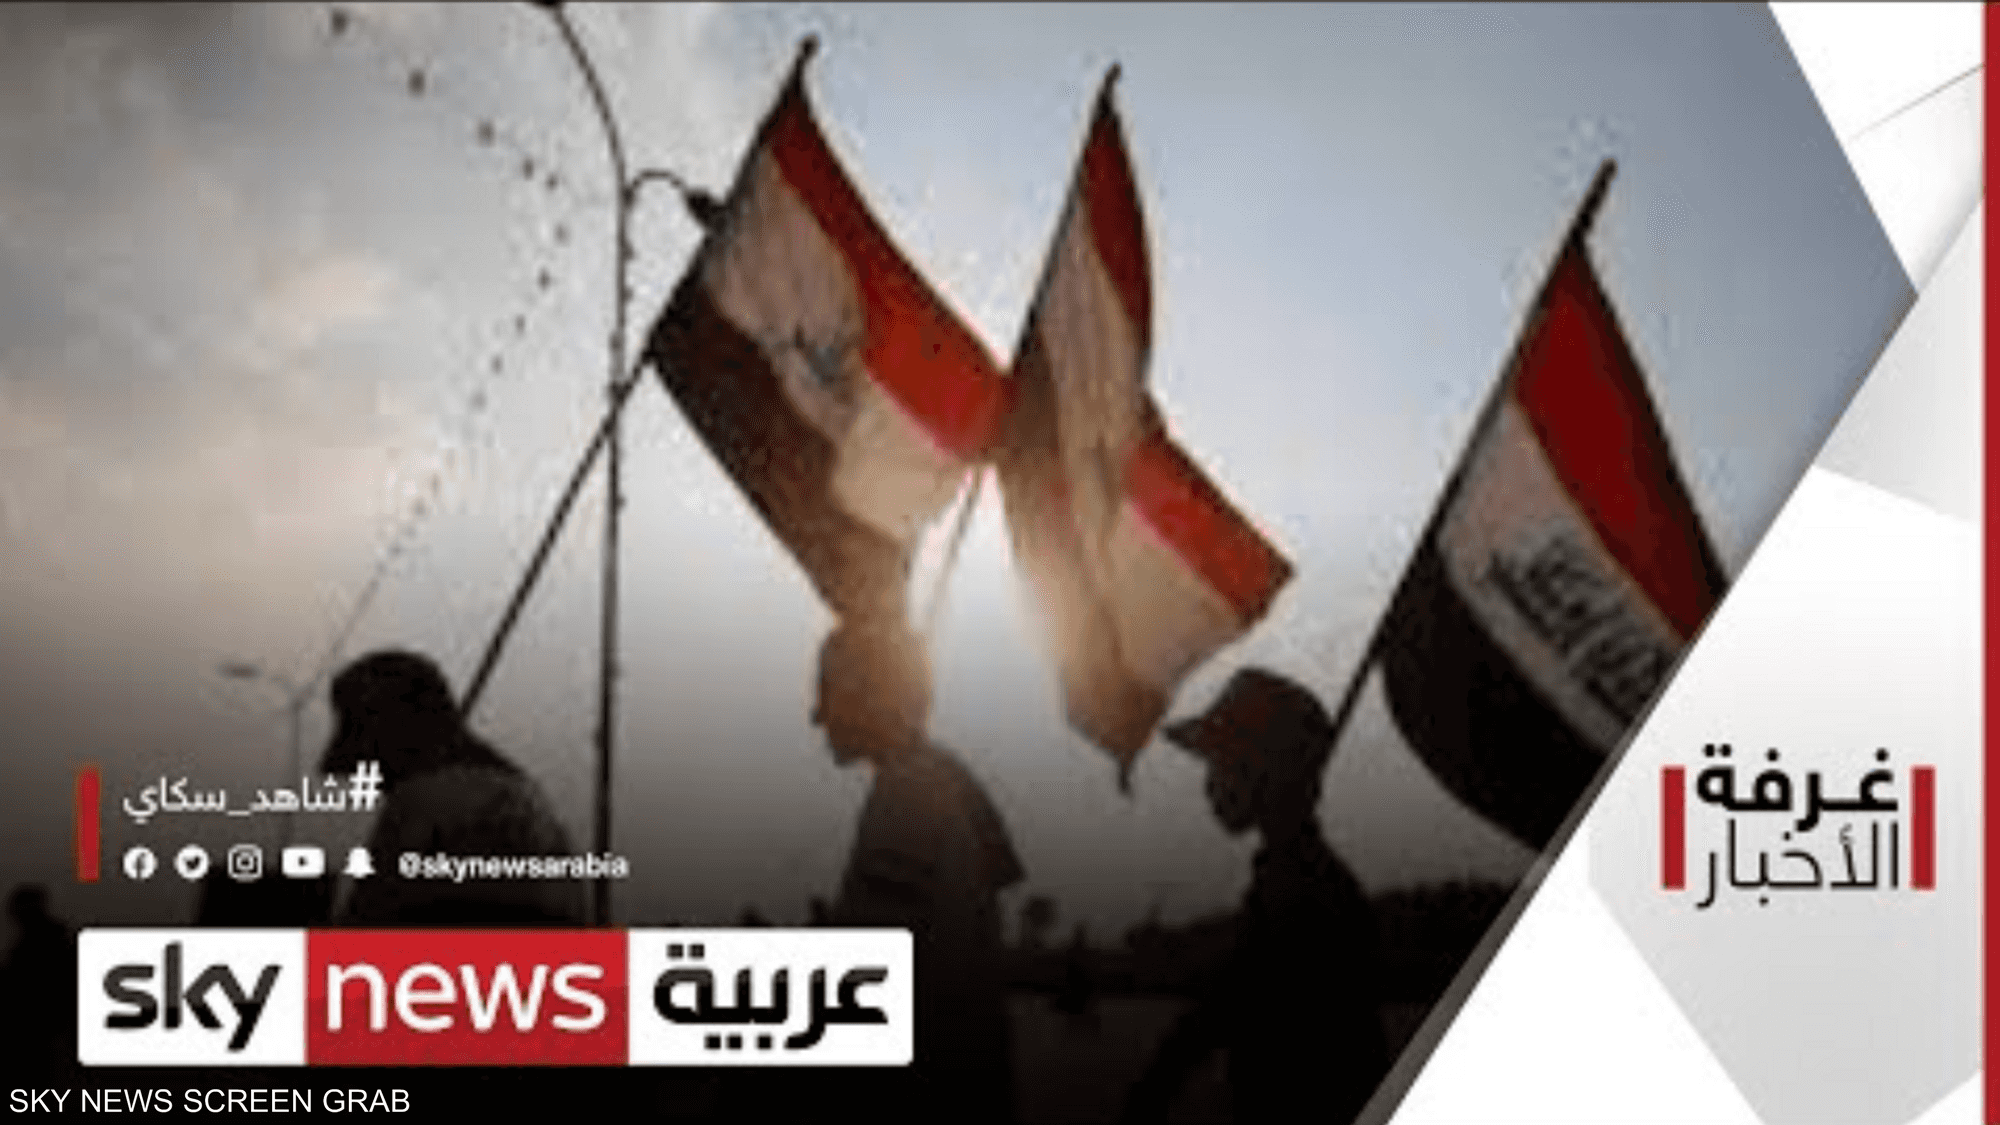 التظاهرات والاشتباكات تعود إلى الساحة العراقية